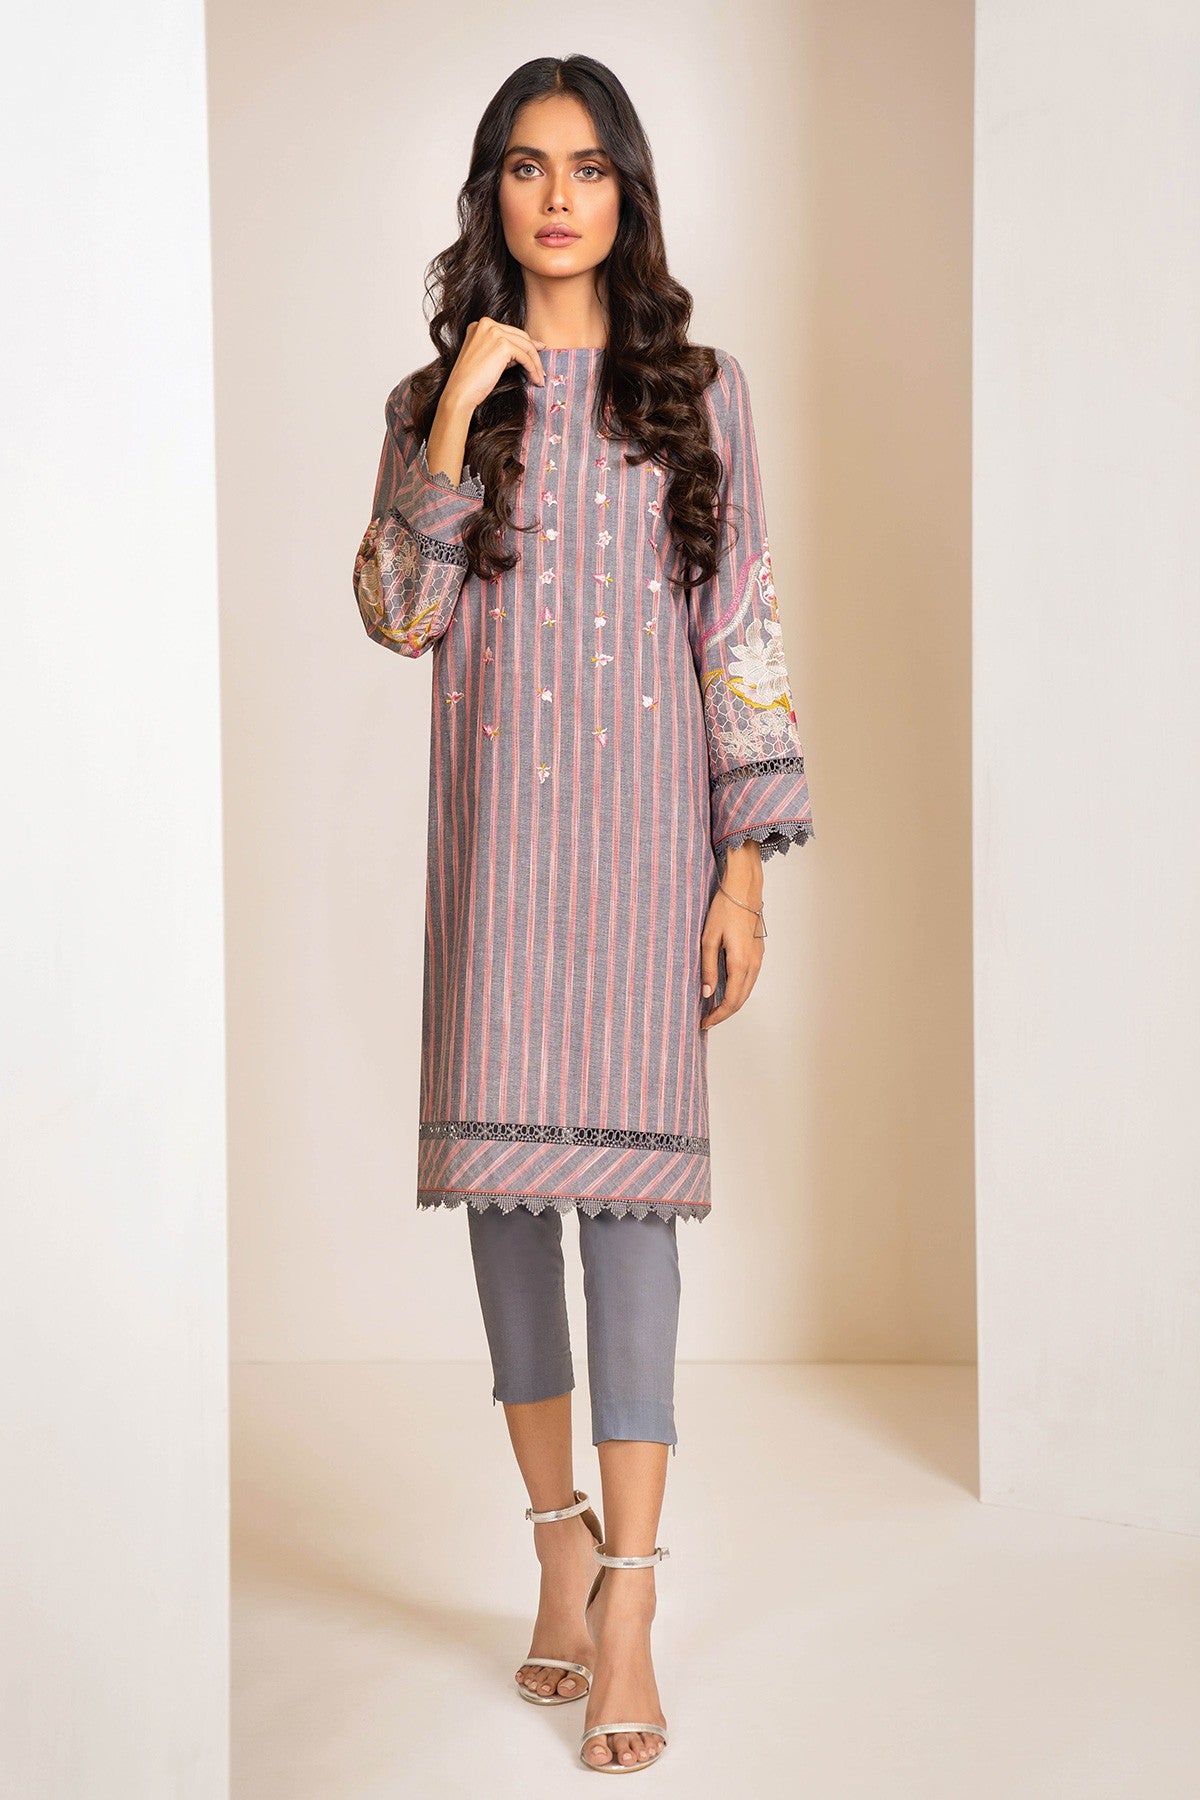 Johra Premium Collection Vol 2 Al Karam Pant Style Suits